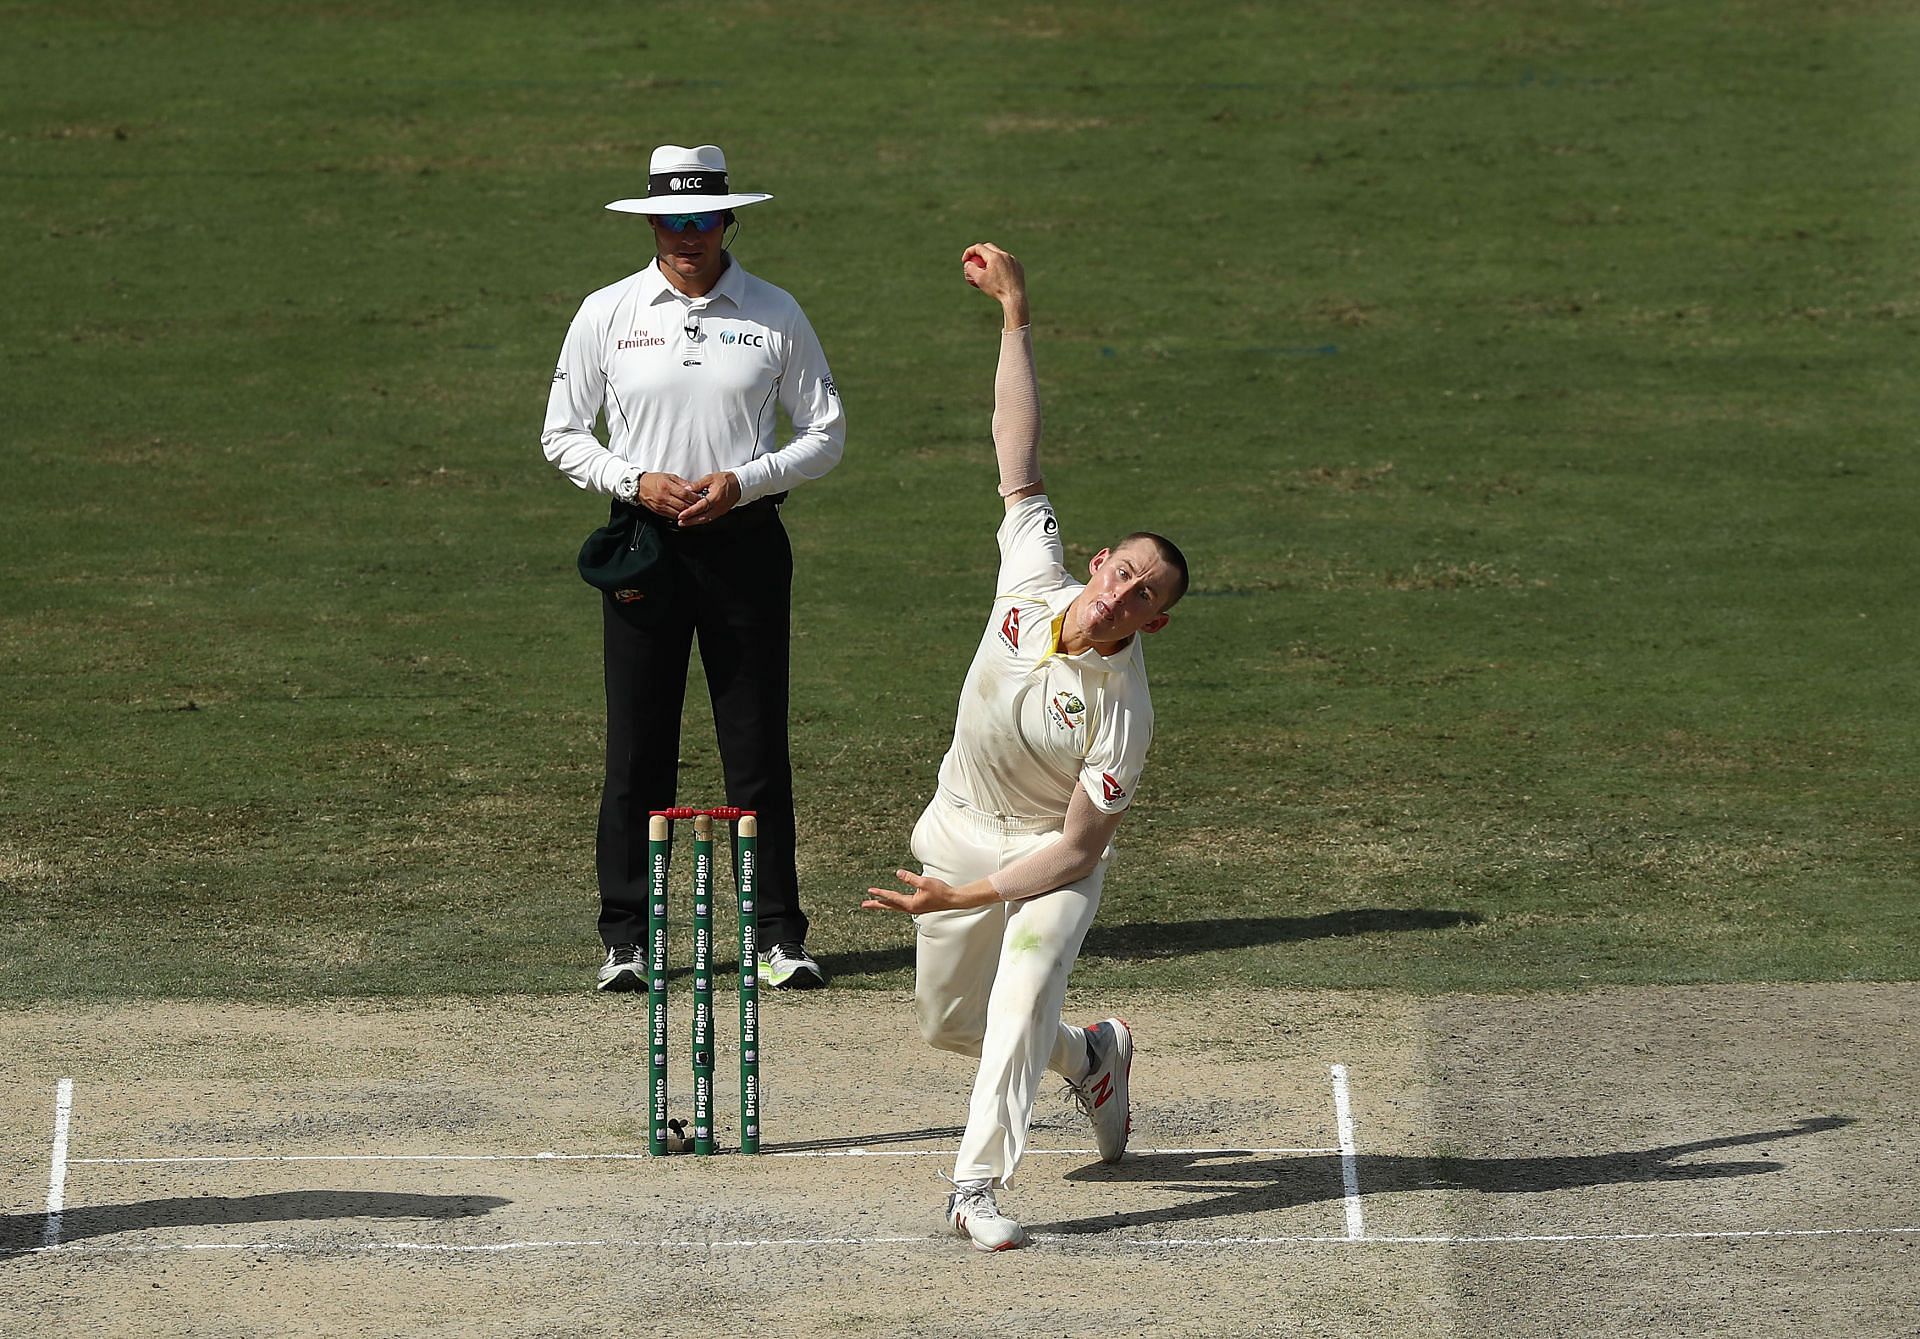 मार्नस लैबूशेन ने टेस्ट क्रिकेट में अभी तक 13 विकेट हासिल किये है